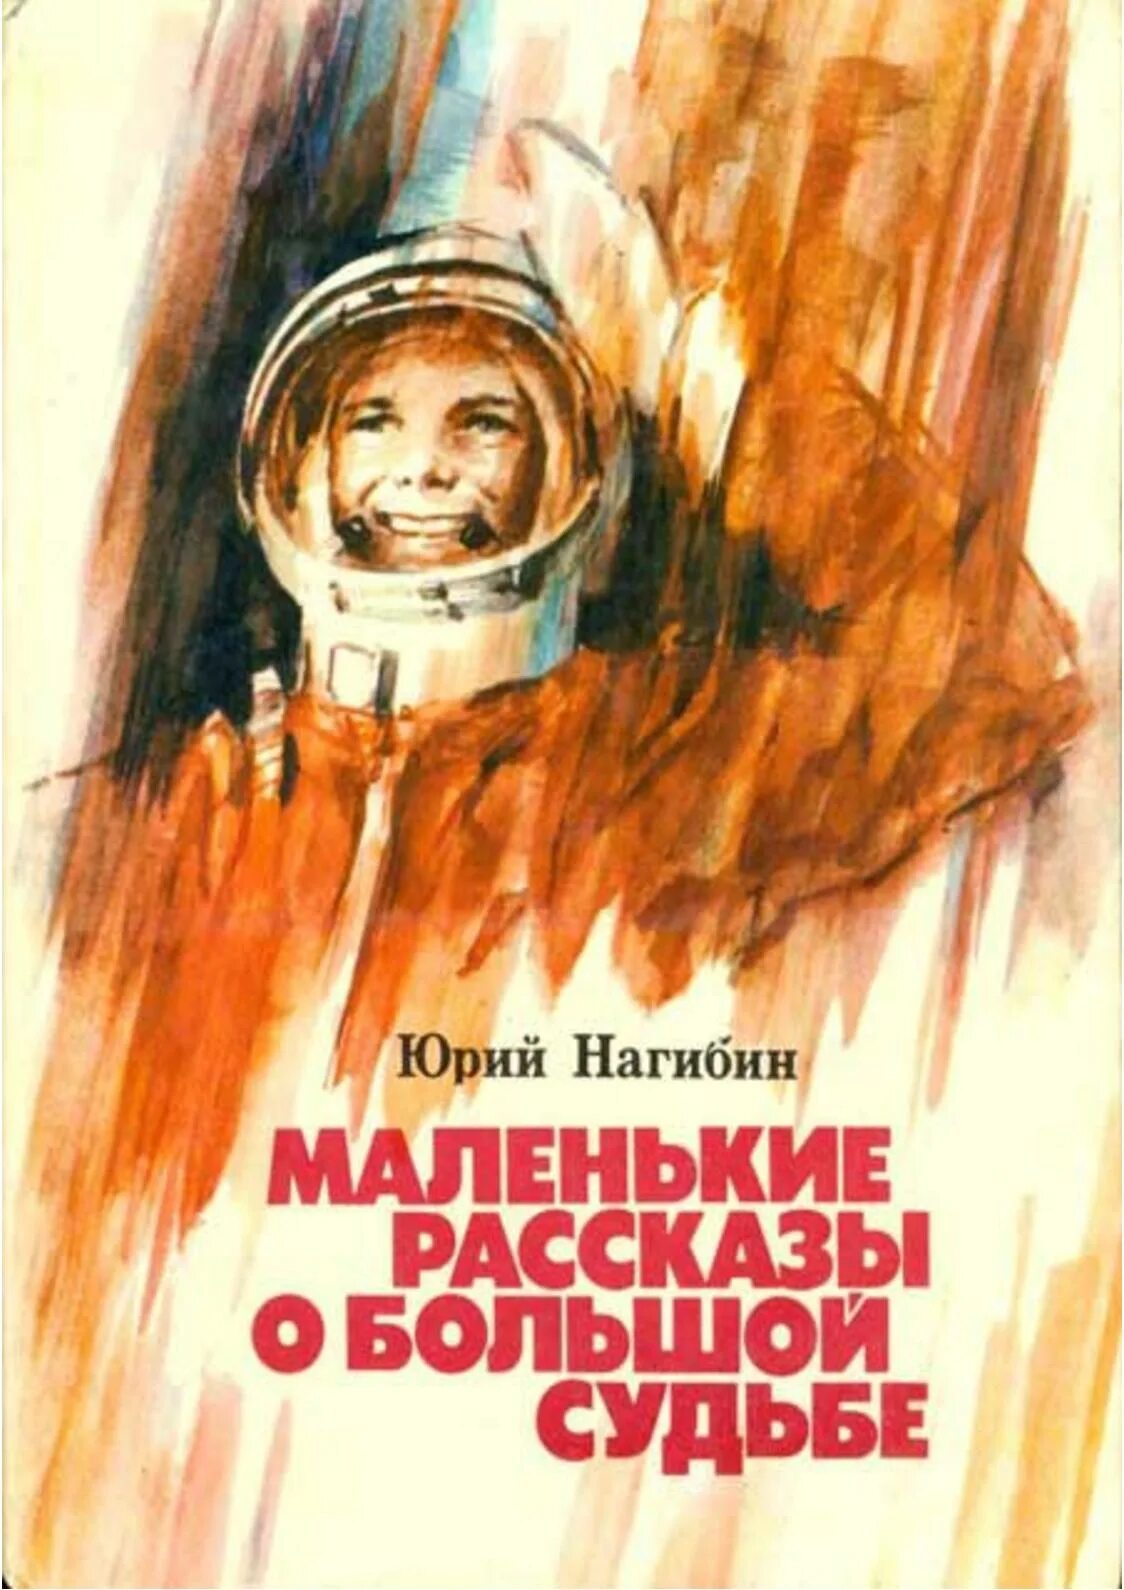 Книга первый космонавт. Нагибин рассказы о Гагарине книга. Книга Юрия Нагибина рассказы о Гагарине. Книга о детстве Гагарина.